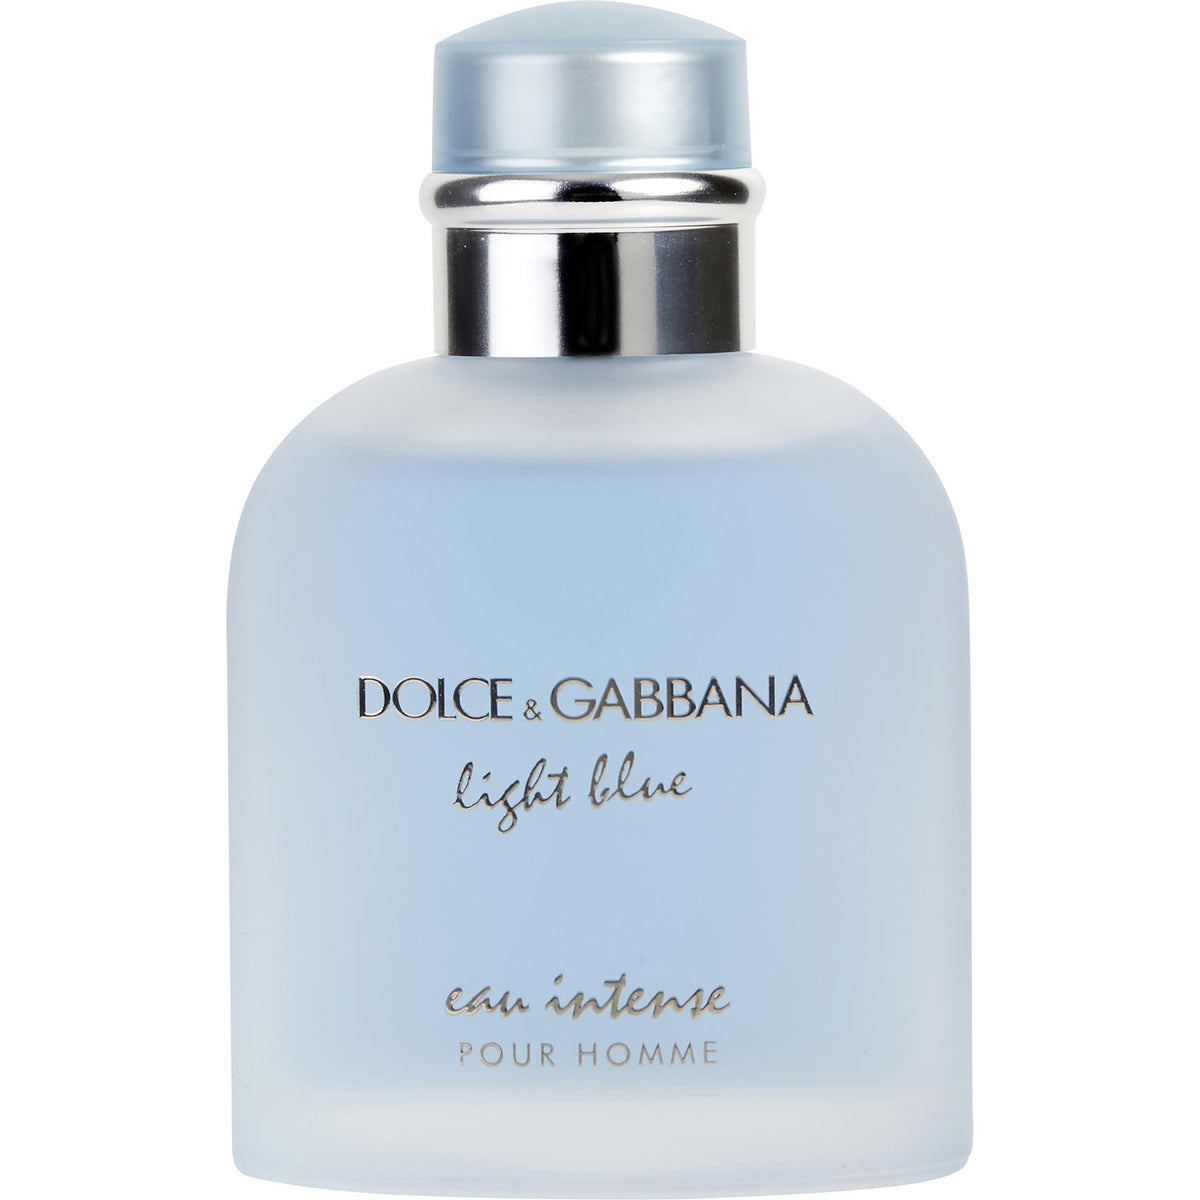 Light Blue Eau Intense Pour by Dolce&Gabbana Fragrance Samples DecantX | Eau de Parfum Scent Sampler and Travel Size Perfume